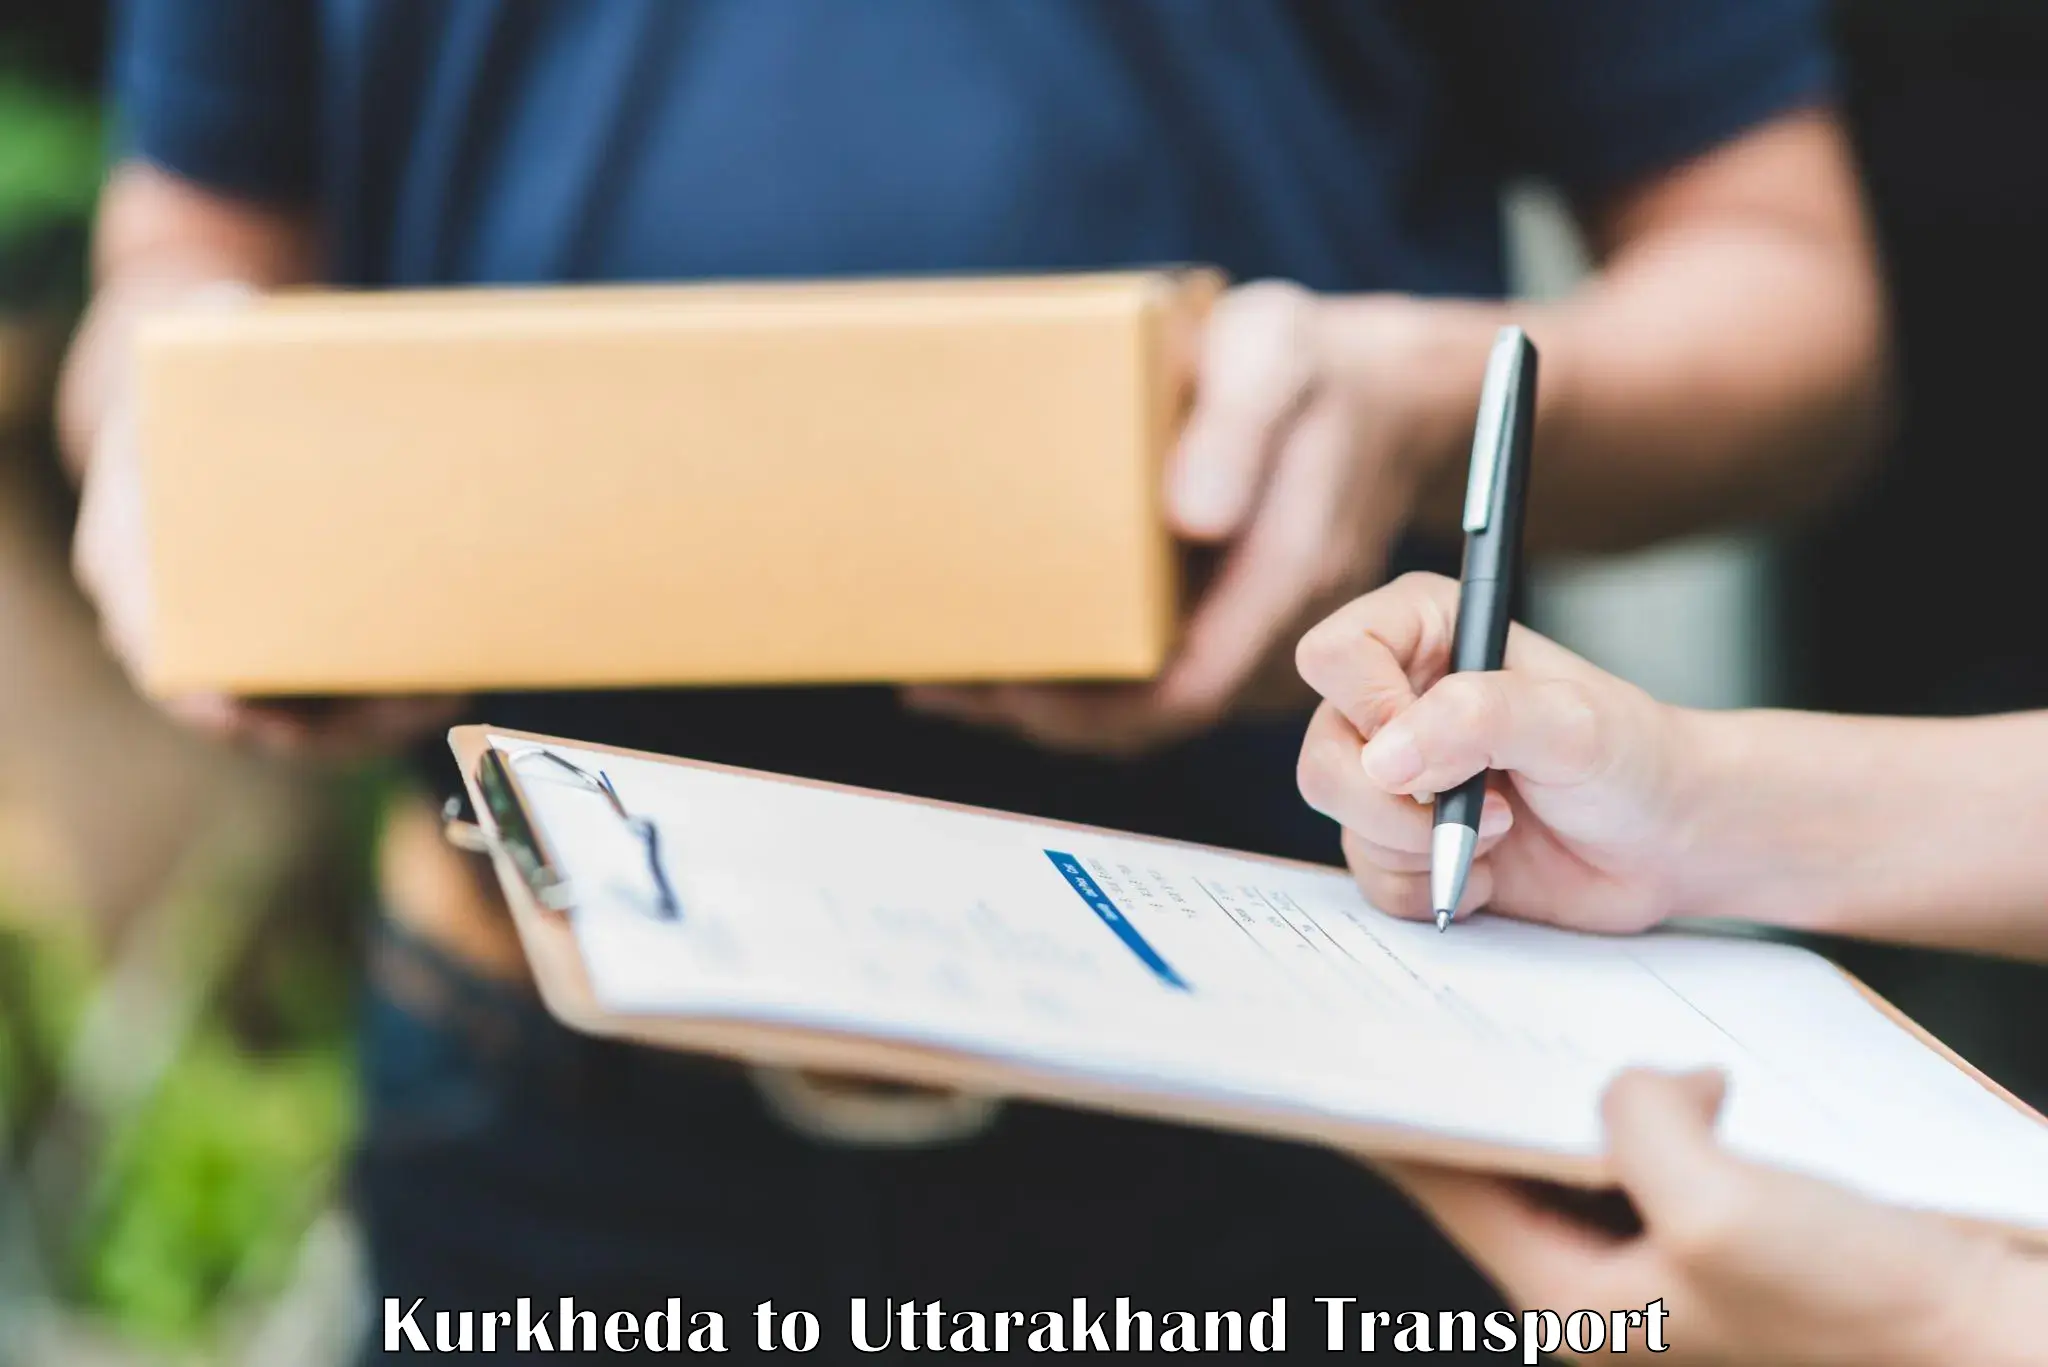 Road transport online services Kurkheda to IIT Roorkee